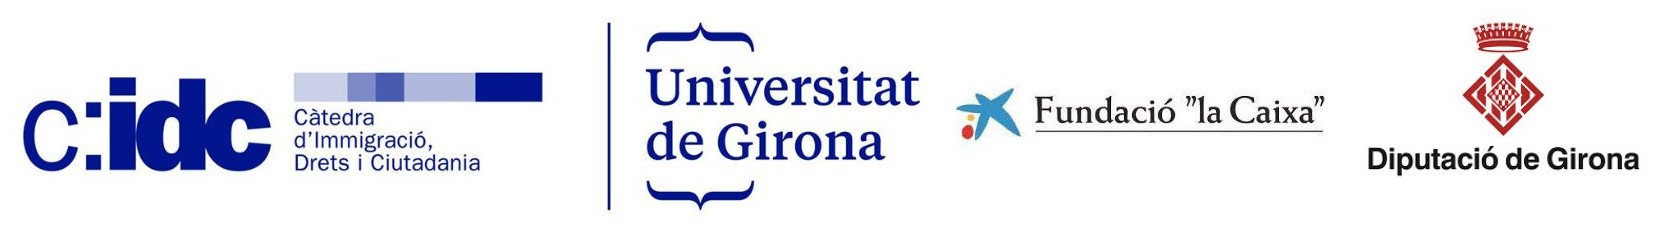 Càtedra d'Immigració, Drets i Ciutadania - Universitat de Girona - Fundació la Caixa - Diputació de Girona